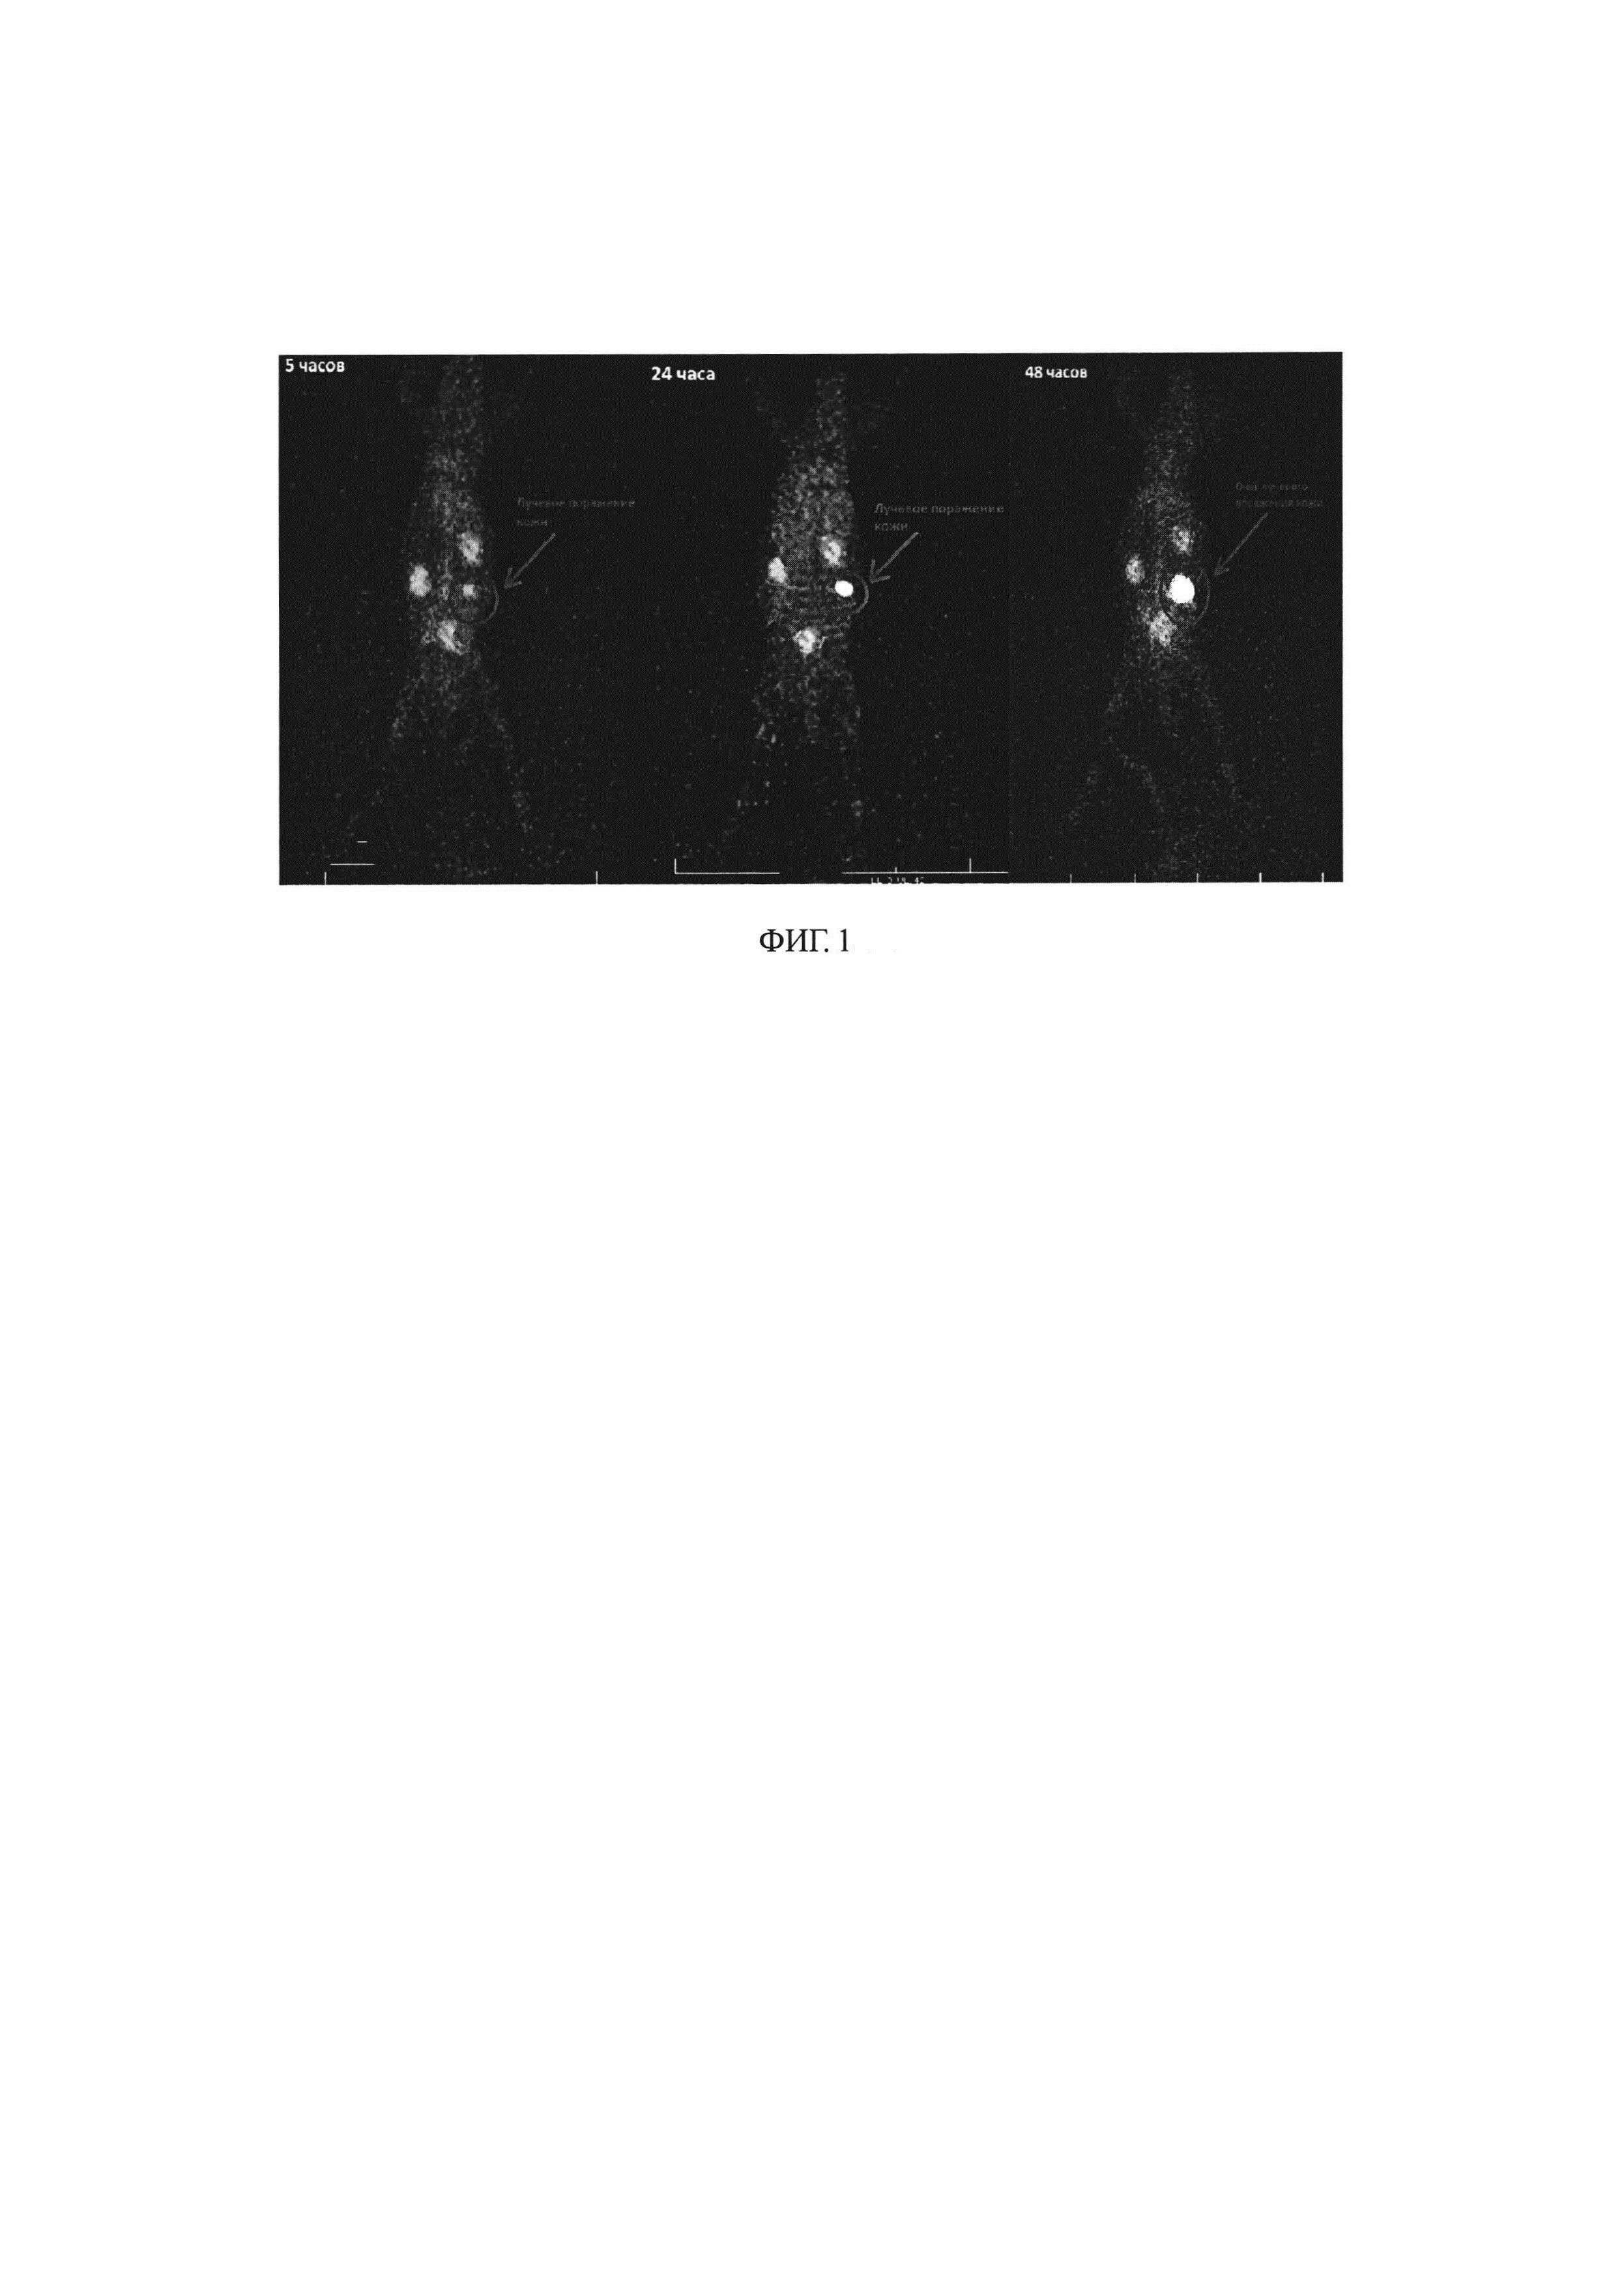 Применение радиофармацевтической композиции с использованием меченых аутологичных лейкоцитов для визуализации местных лучевых поражений методом однофотонной эмиссионной томографии